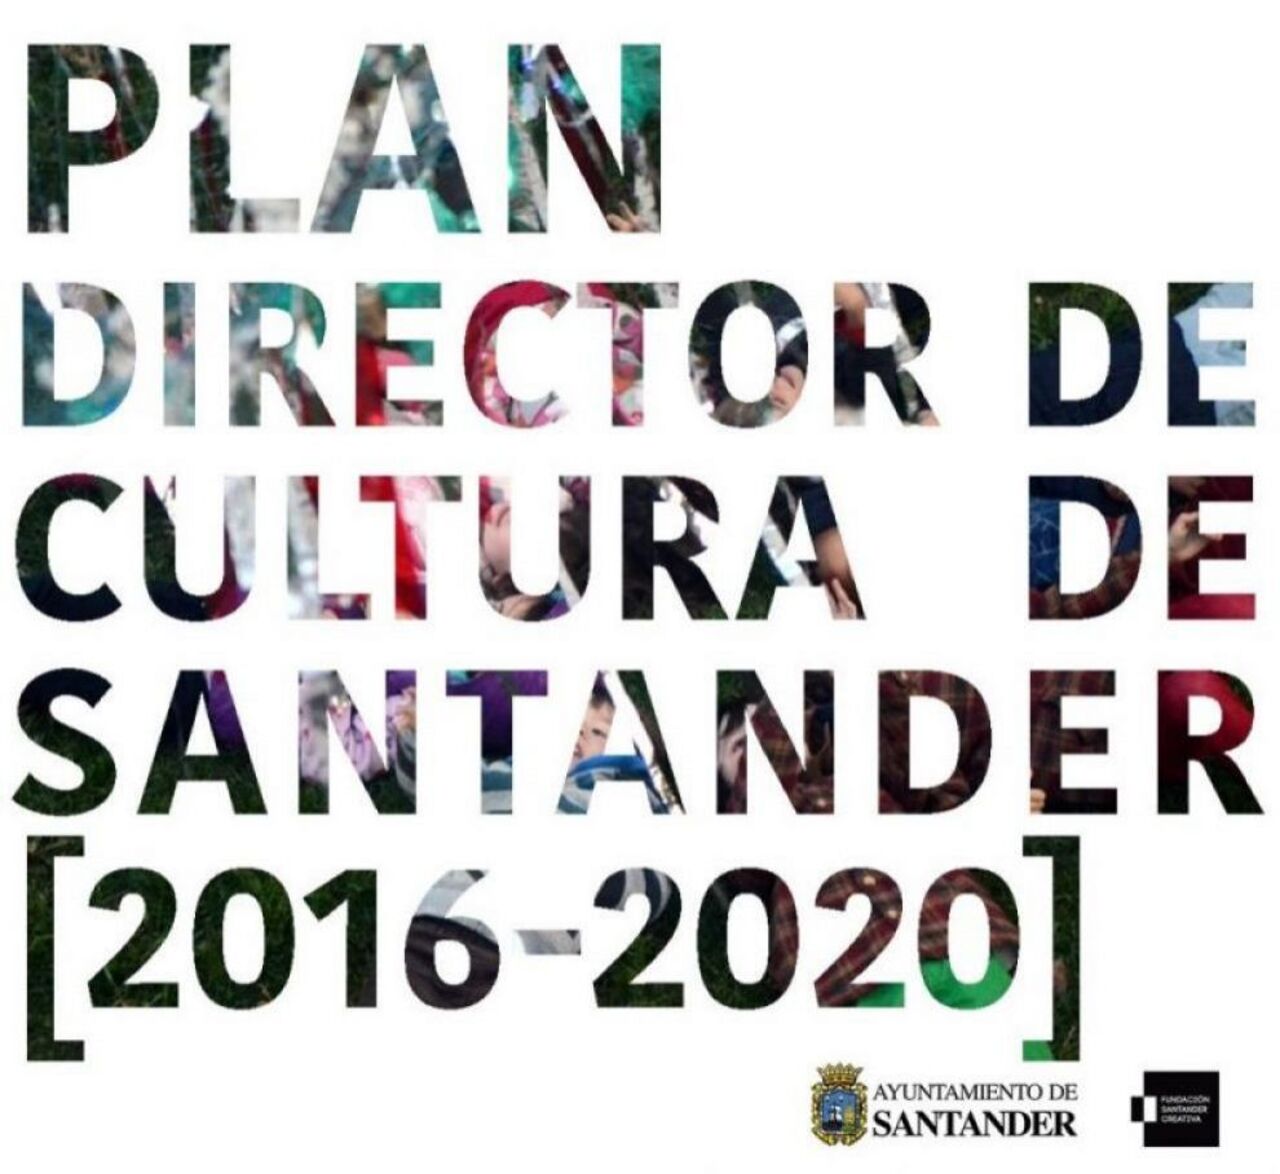 Agentes Culturales y ciudadanos pueden realizar ya aportaciones a las líneas estratégicas del Plan Director de Cultura